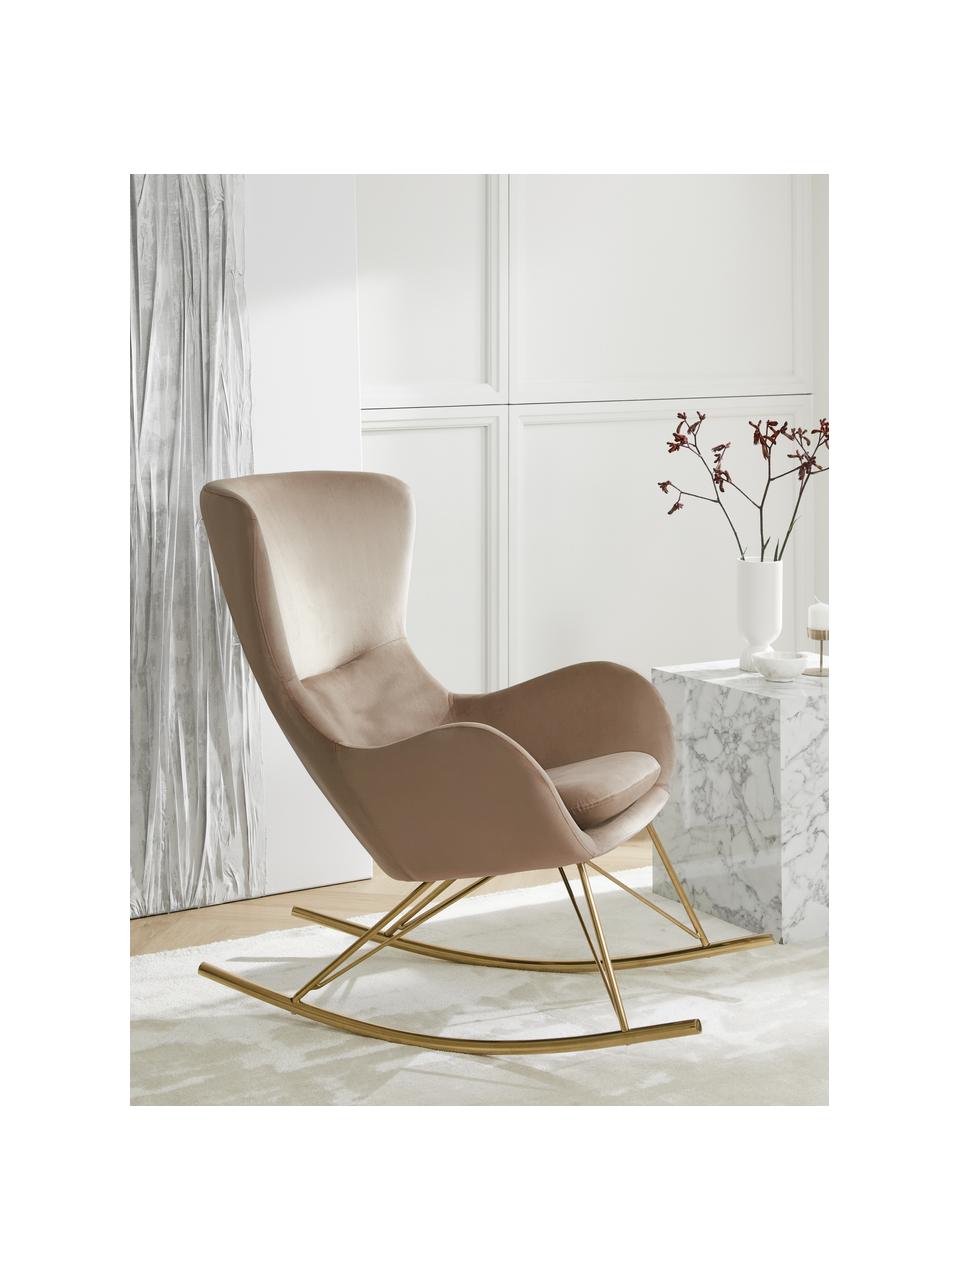 Fluwelen schommelstoel Wing in taupe met metalen poten, Frame: metaal, verzinkt, Fluweel beige, goudkleurig, B 76 x H 108 cm